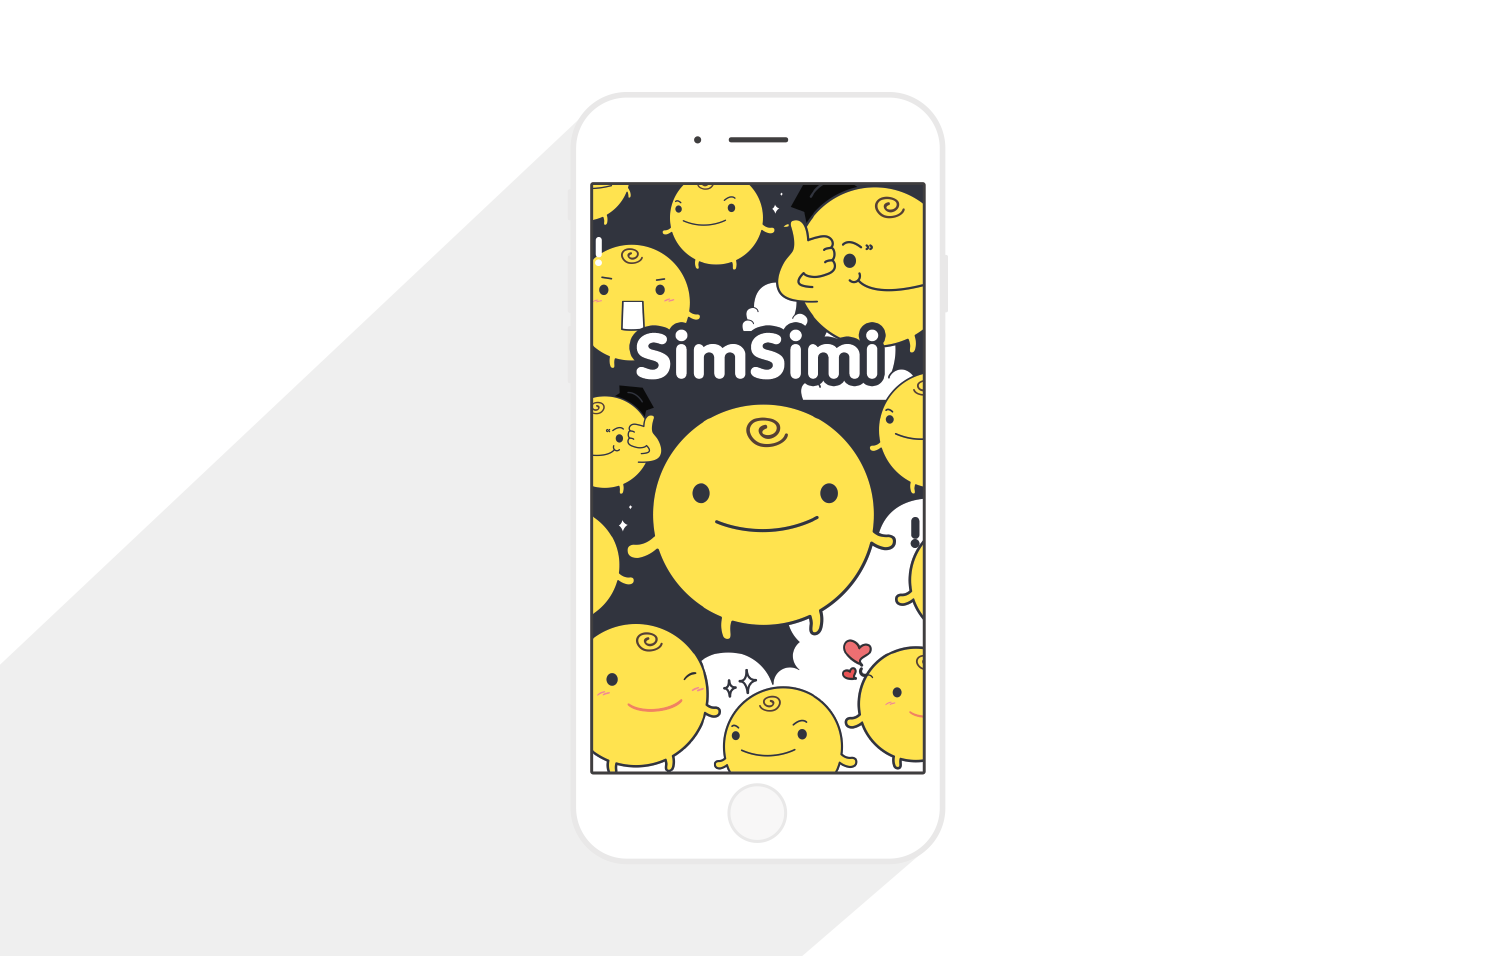  ¿Qué es SimSimi y por qué es tan popular?